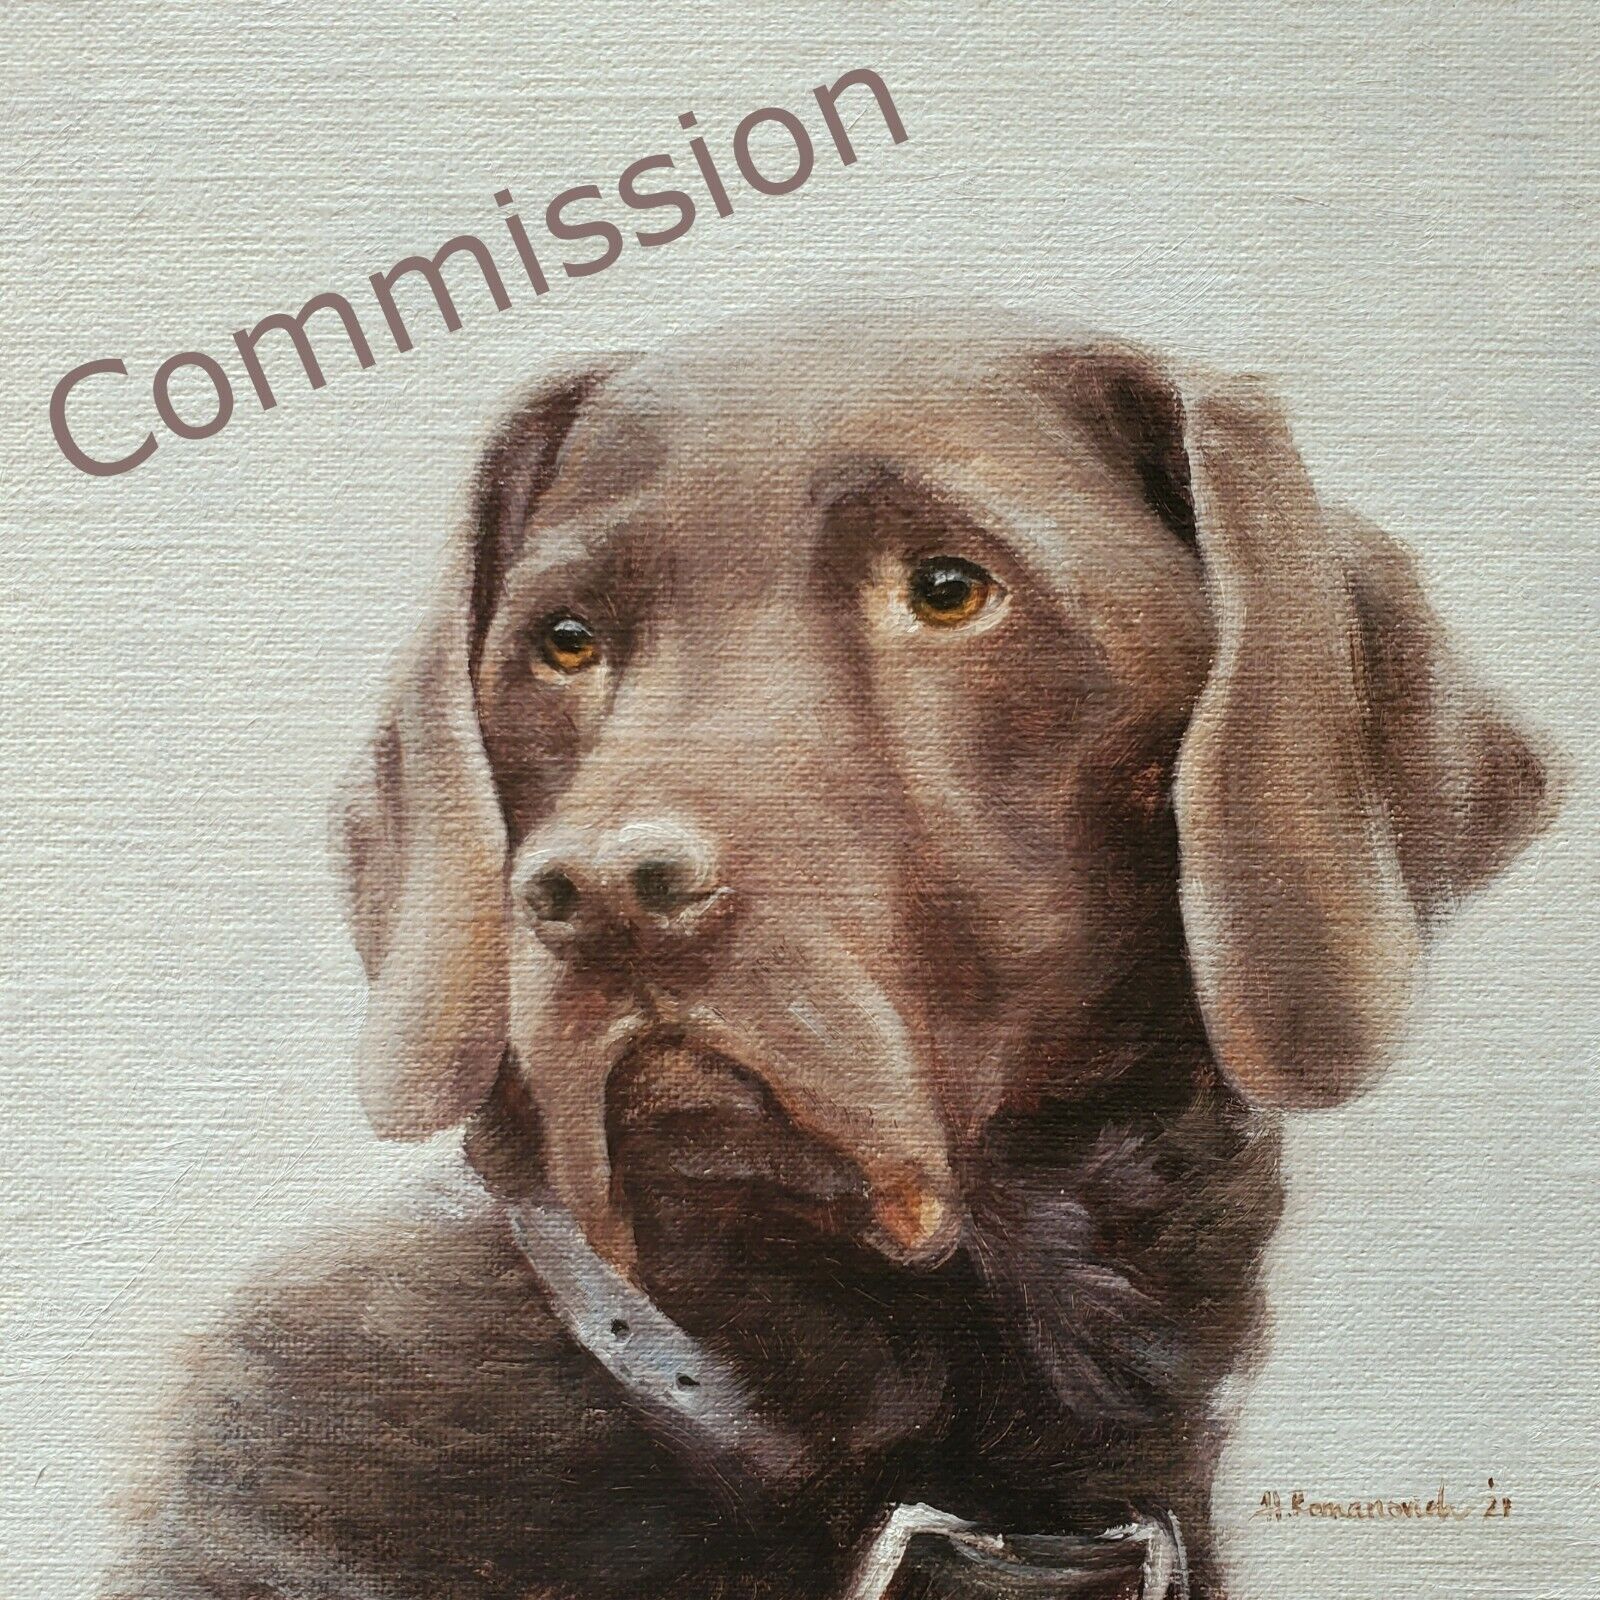 16"x20" Pet Portrait Commission Oil Painting